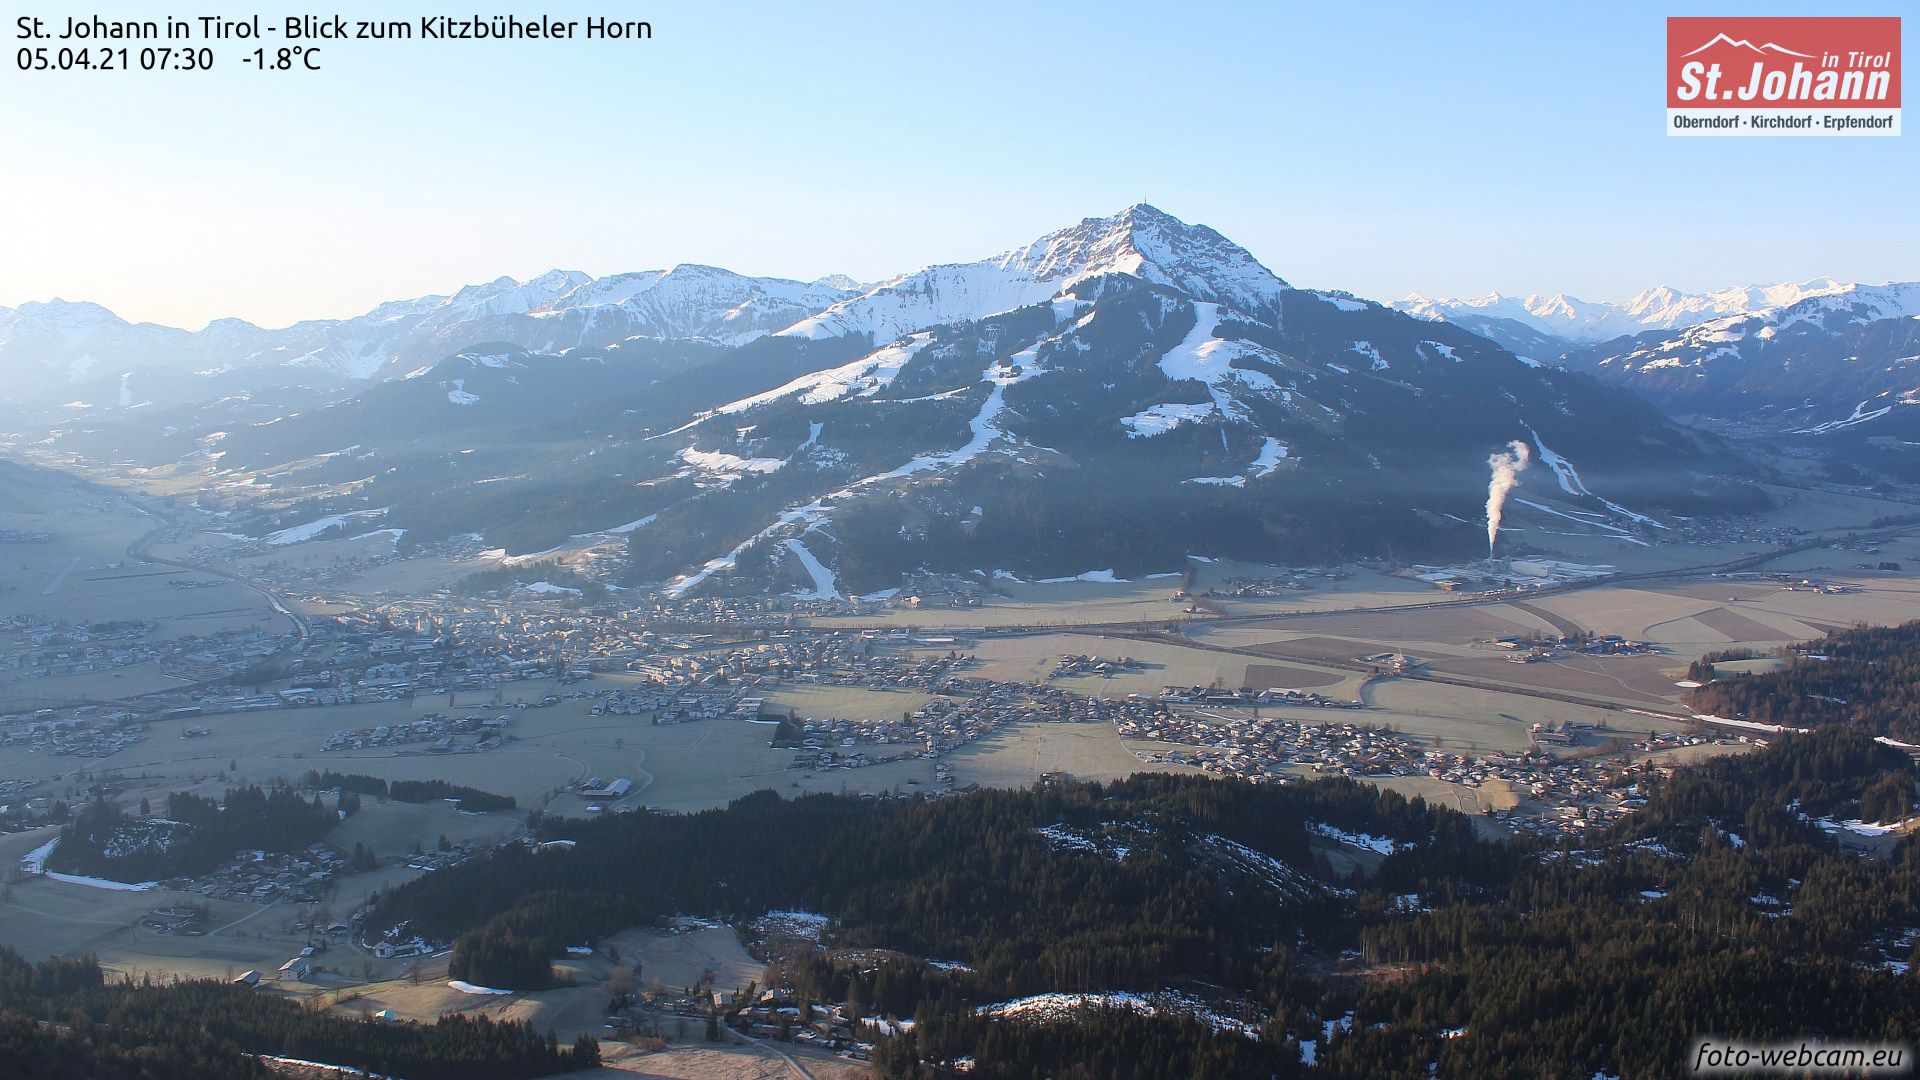 Een frisse start van de dag in Sankt Johann in Tirol, vanaf morgen is het hier weer wit (foto-webcam.eu)